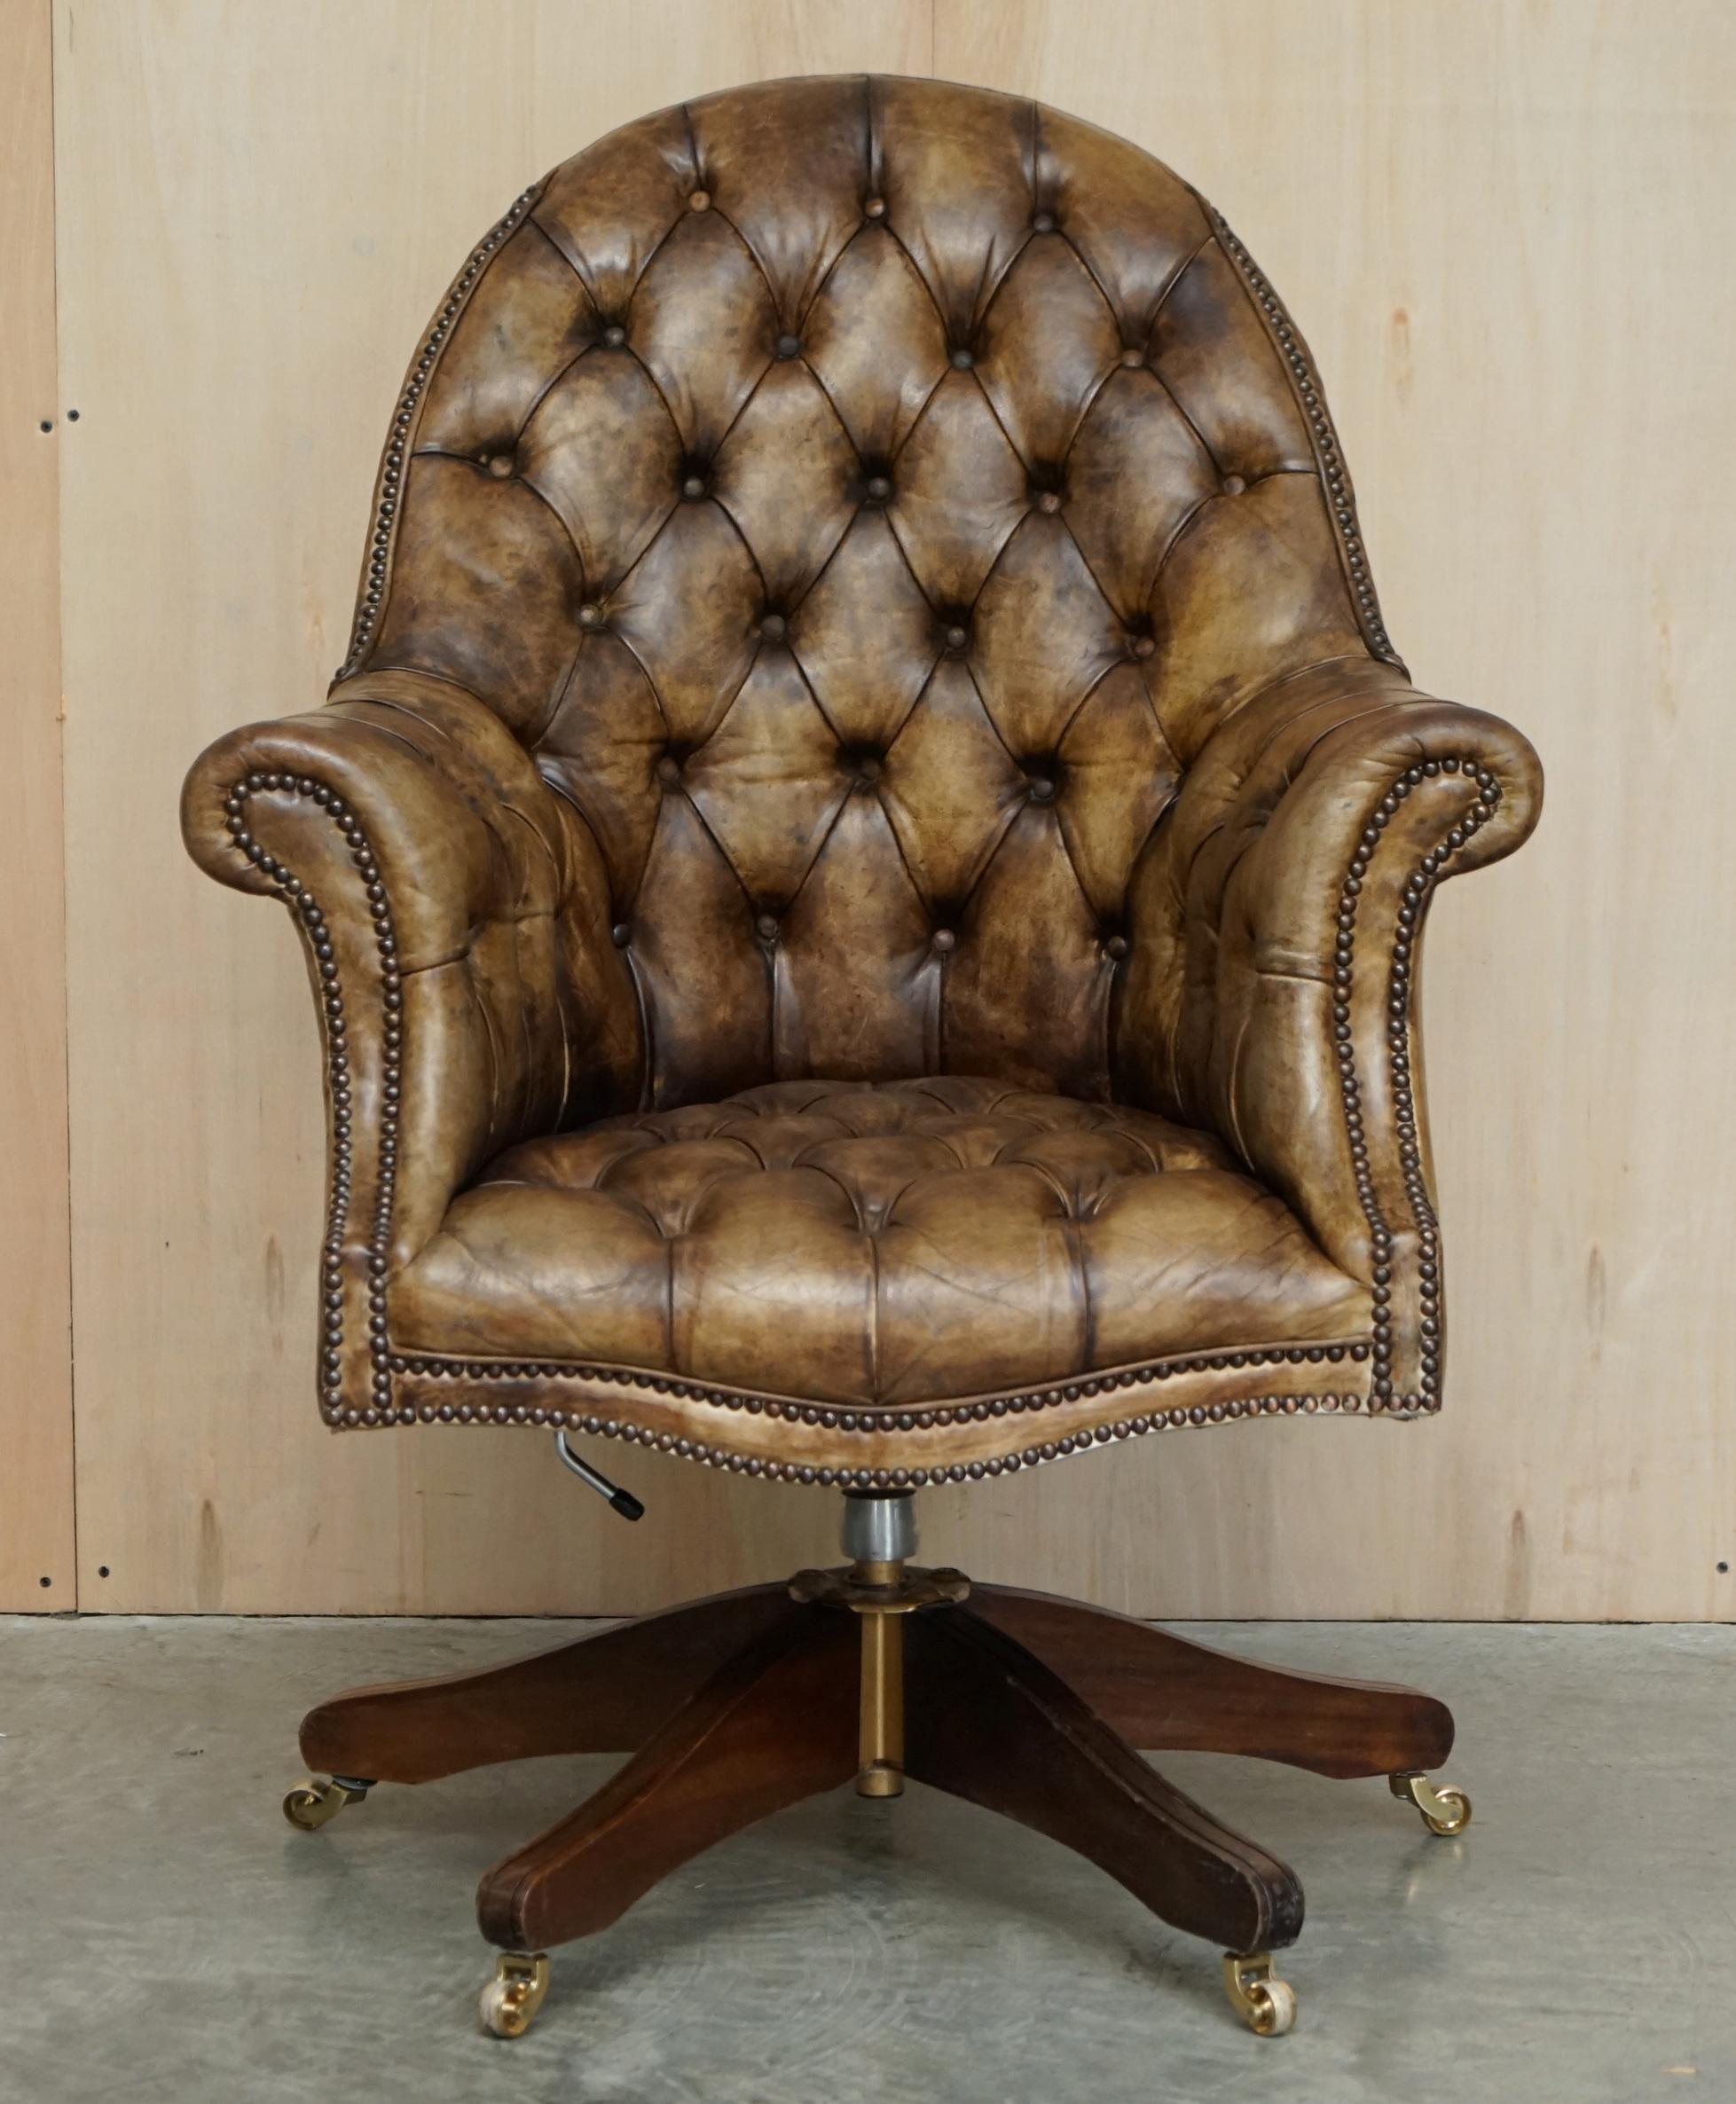 Nous sommes ravis d'offrir à la vente cette belle chaise de directeur Chesterfield touffetée, légèrement restaurée en cuir d'origine, teintée à la main en cuir brun acajou.

Une chaise de réalisateur très belle, bien faite et confortable. Son